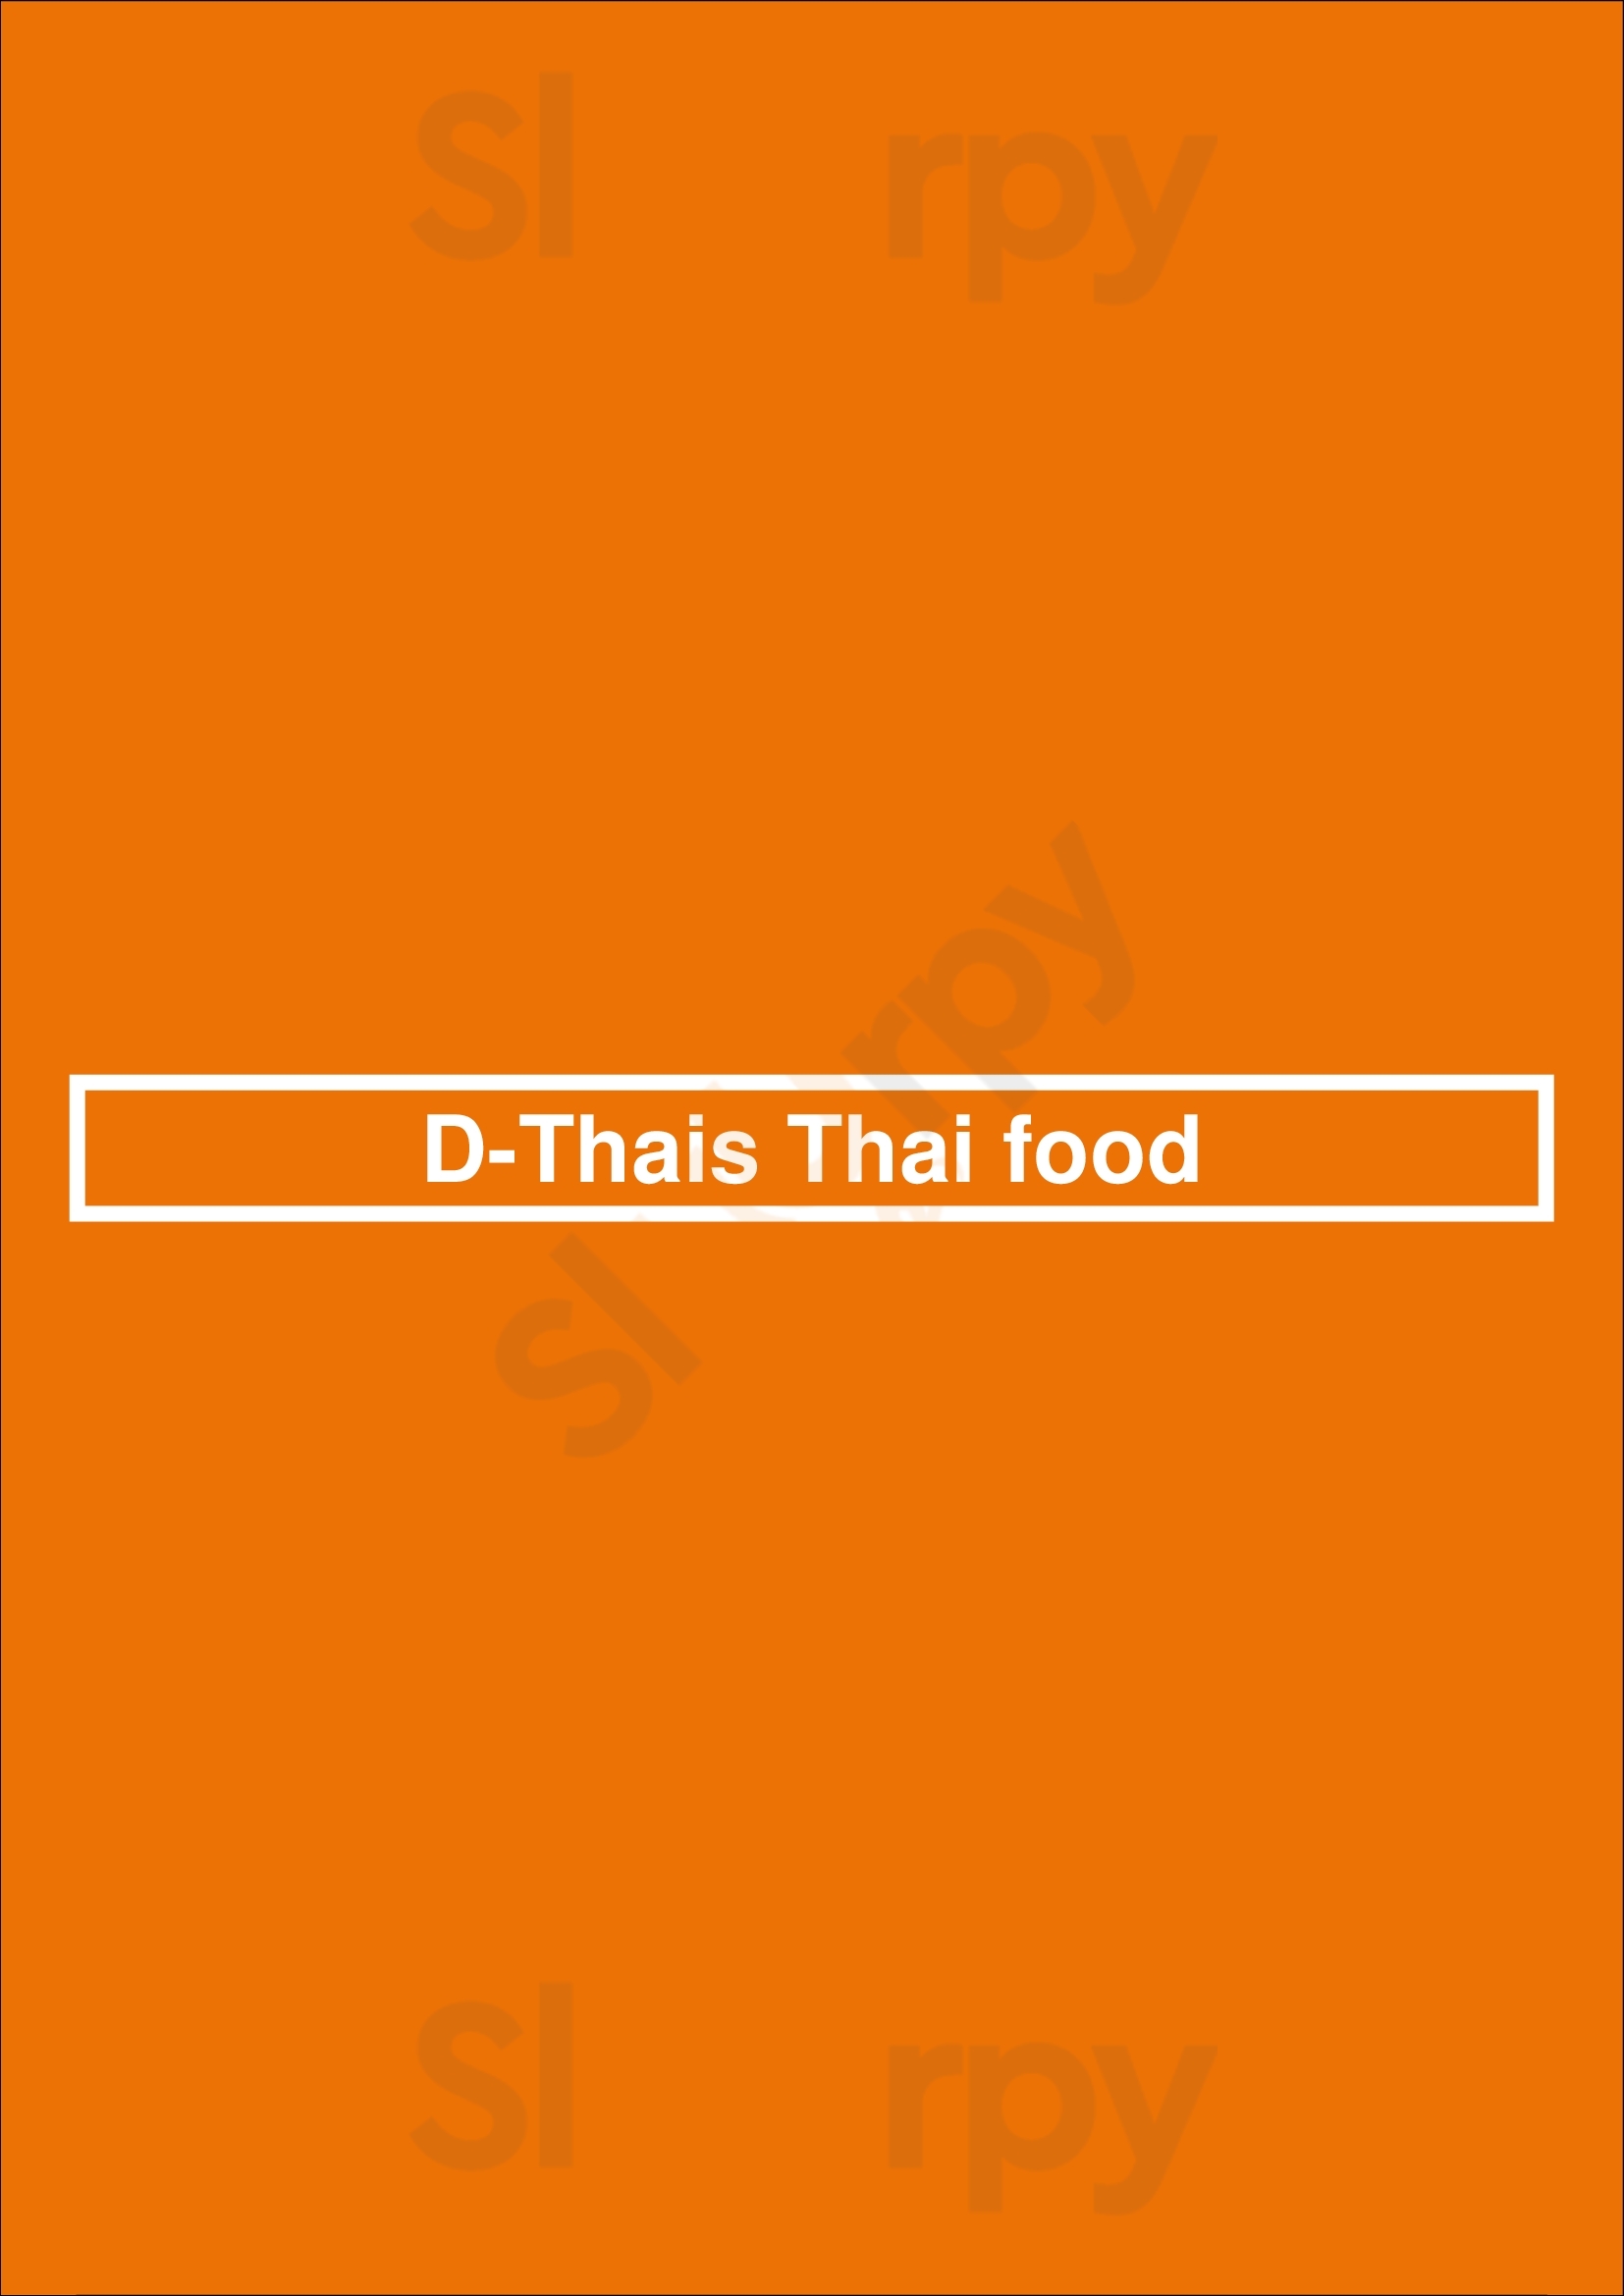 D-thais Thai Food Hilversum Menu - 1